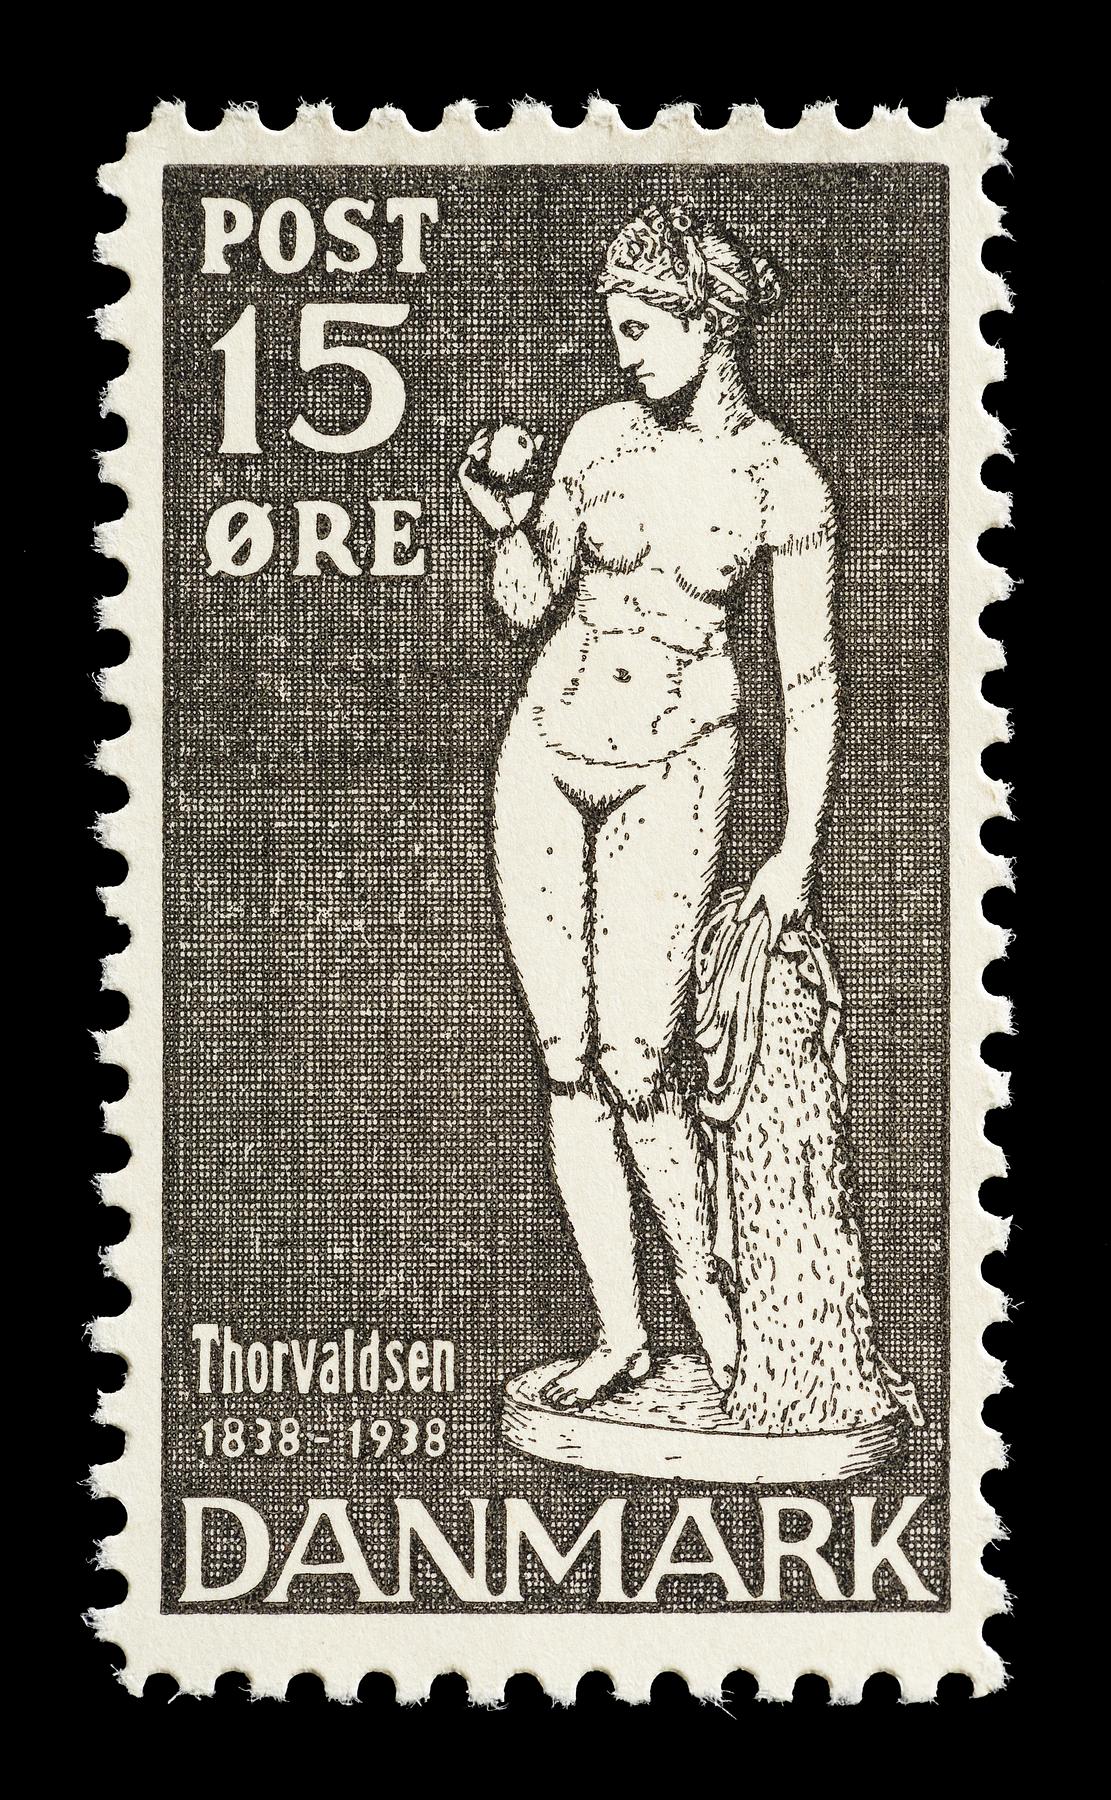 Prøvetryk af udkast til et dansk frimærke med Thorvaldsens Venus med æblet, E2341,19